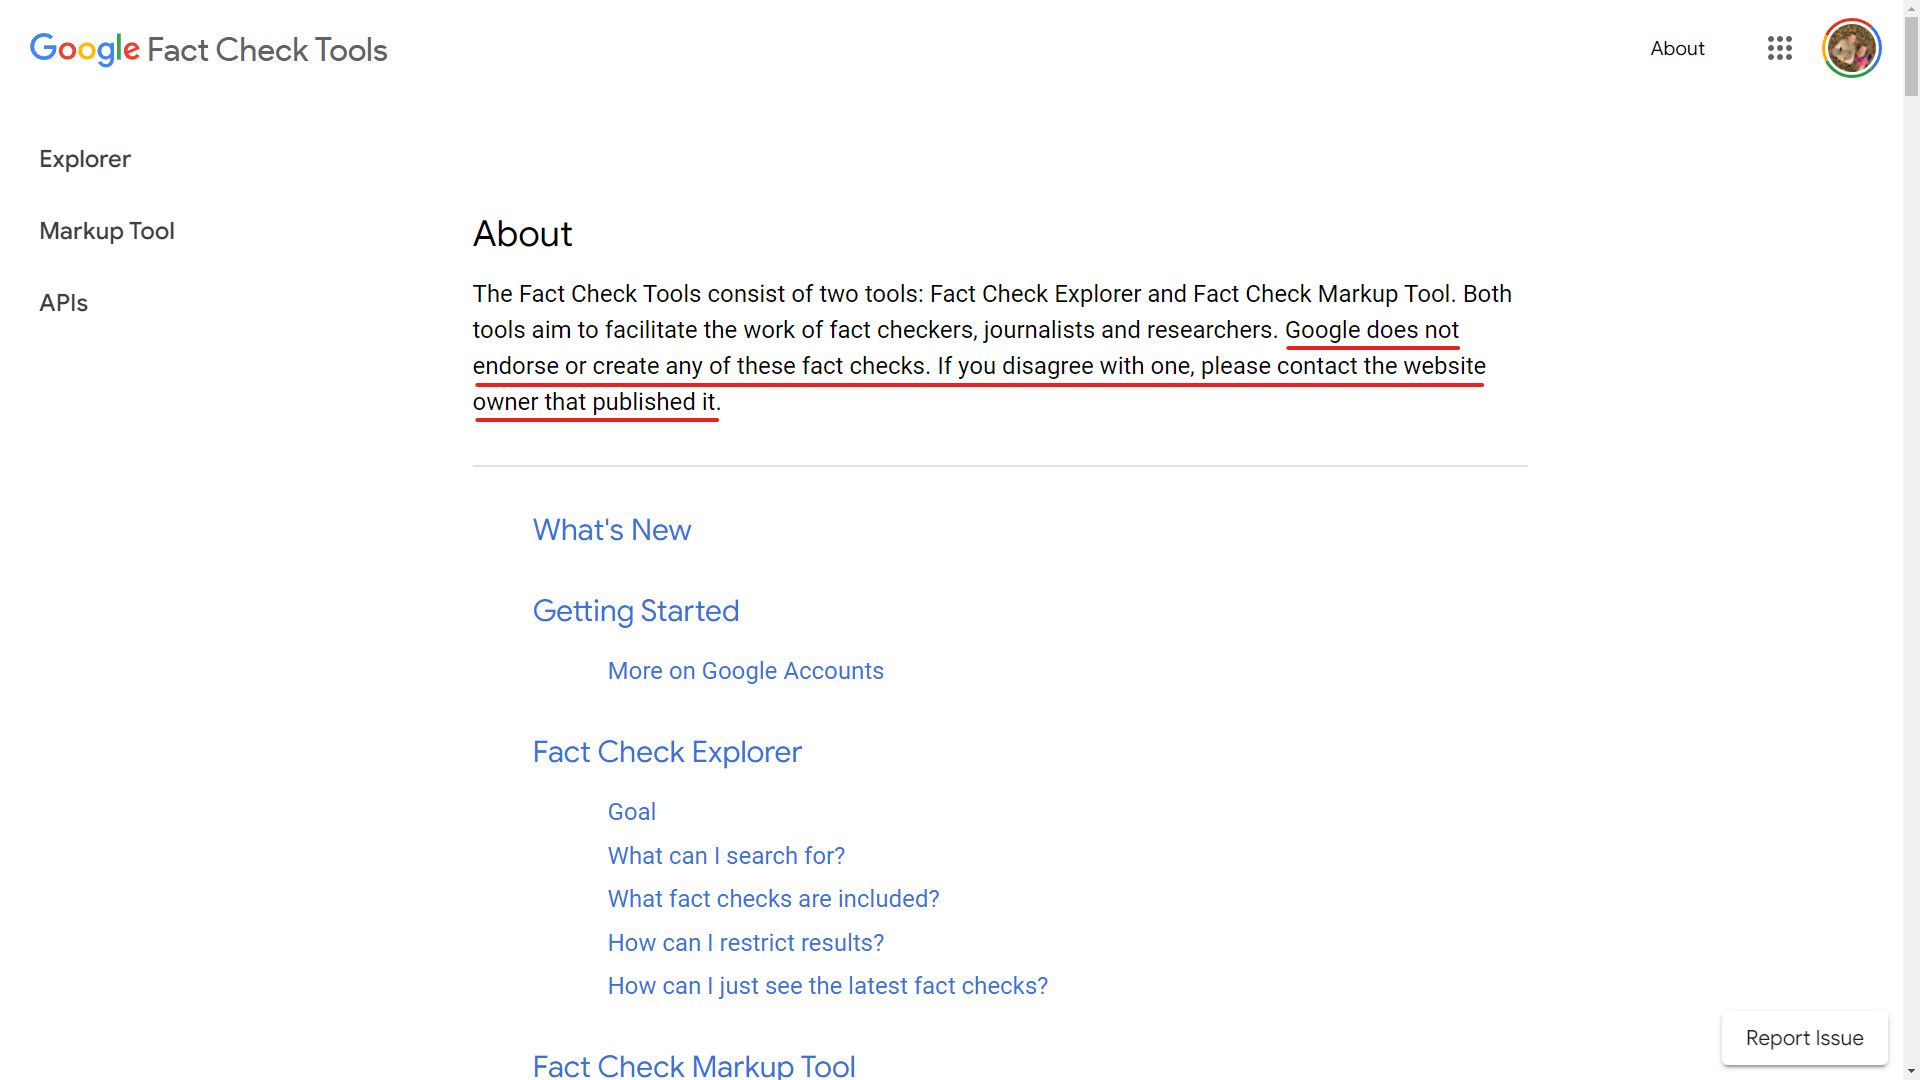 Uma captura de tela da isenção de responsabilidade do Fact Check Explorer do Google sublinhada.